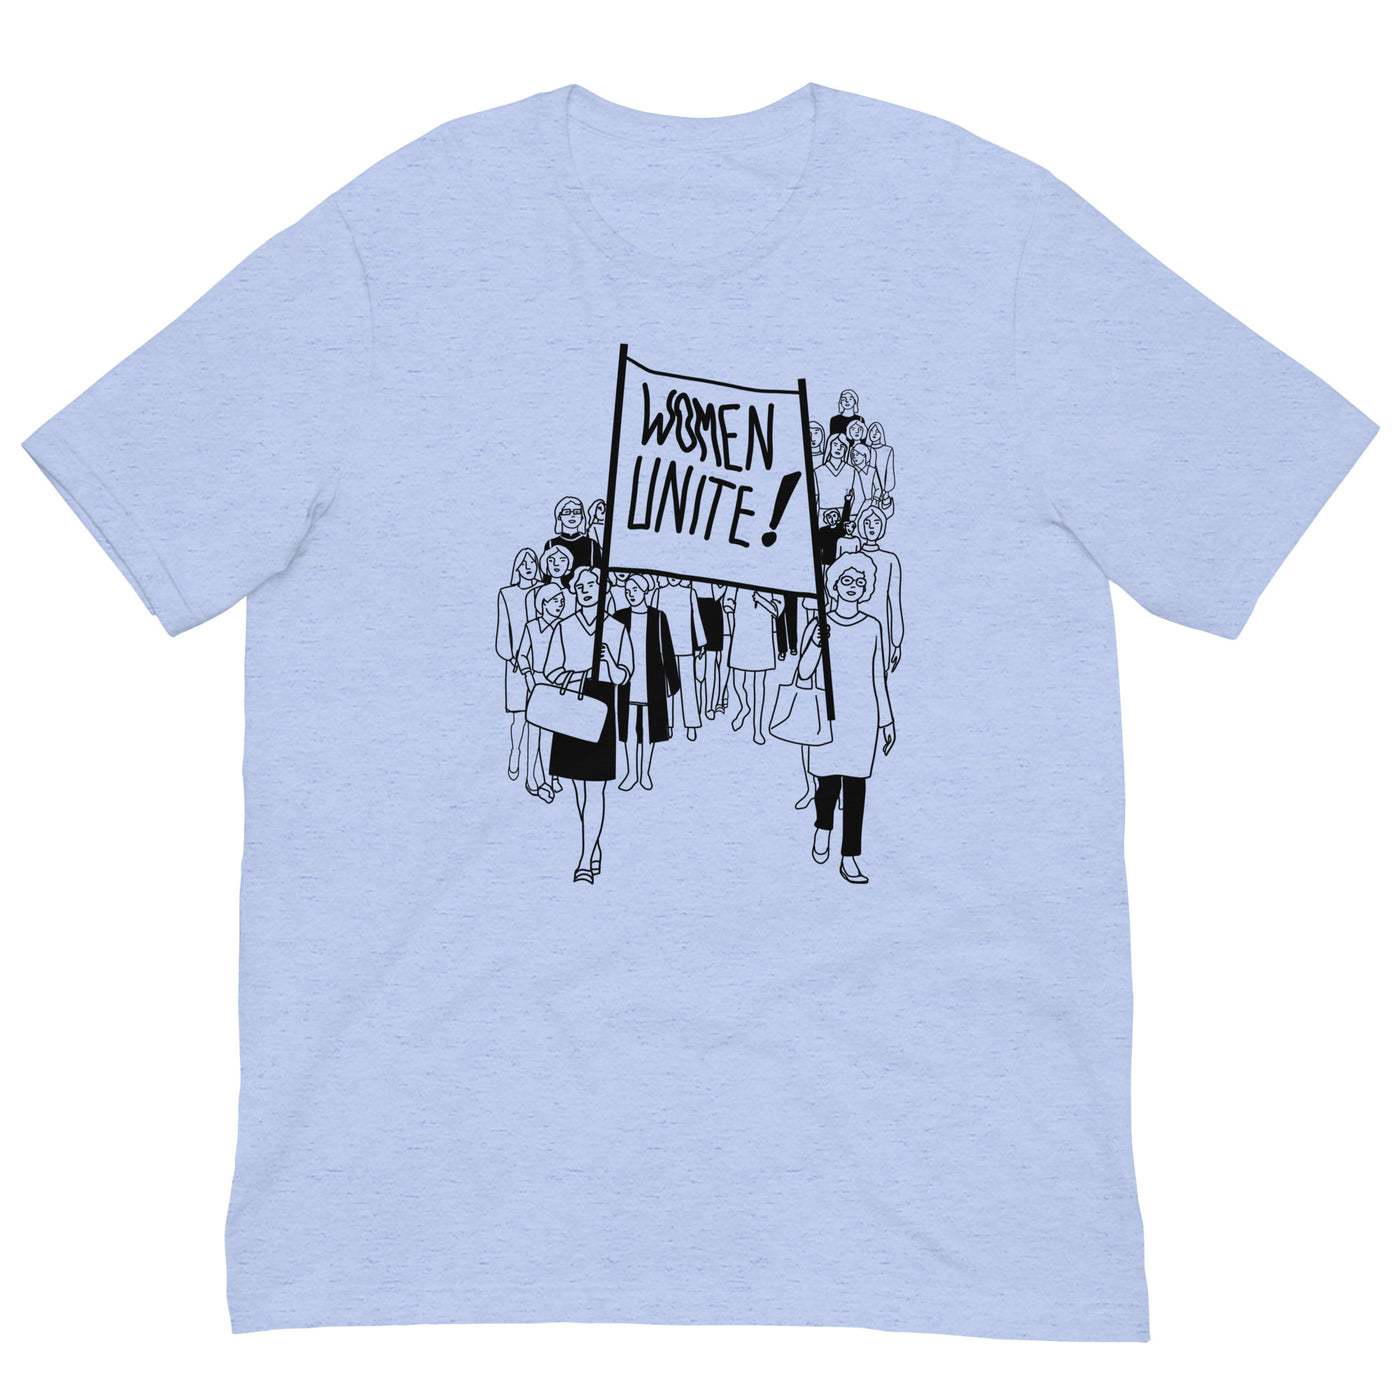 Unisex t-shirt with "WOMEN UNIT" imprint